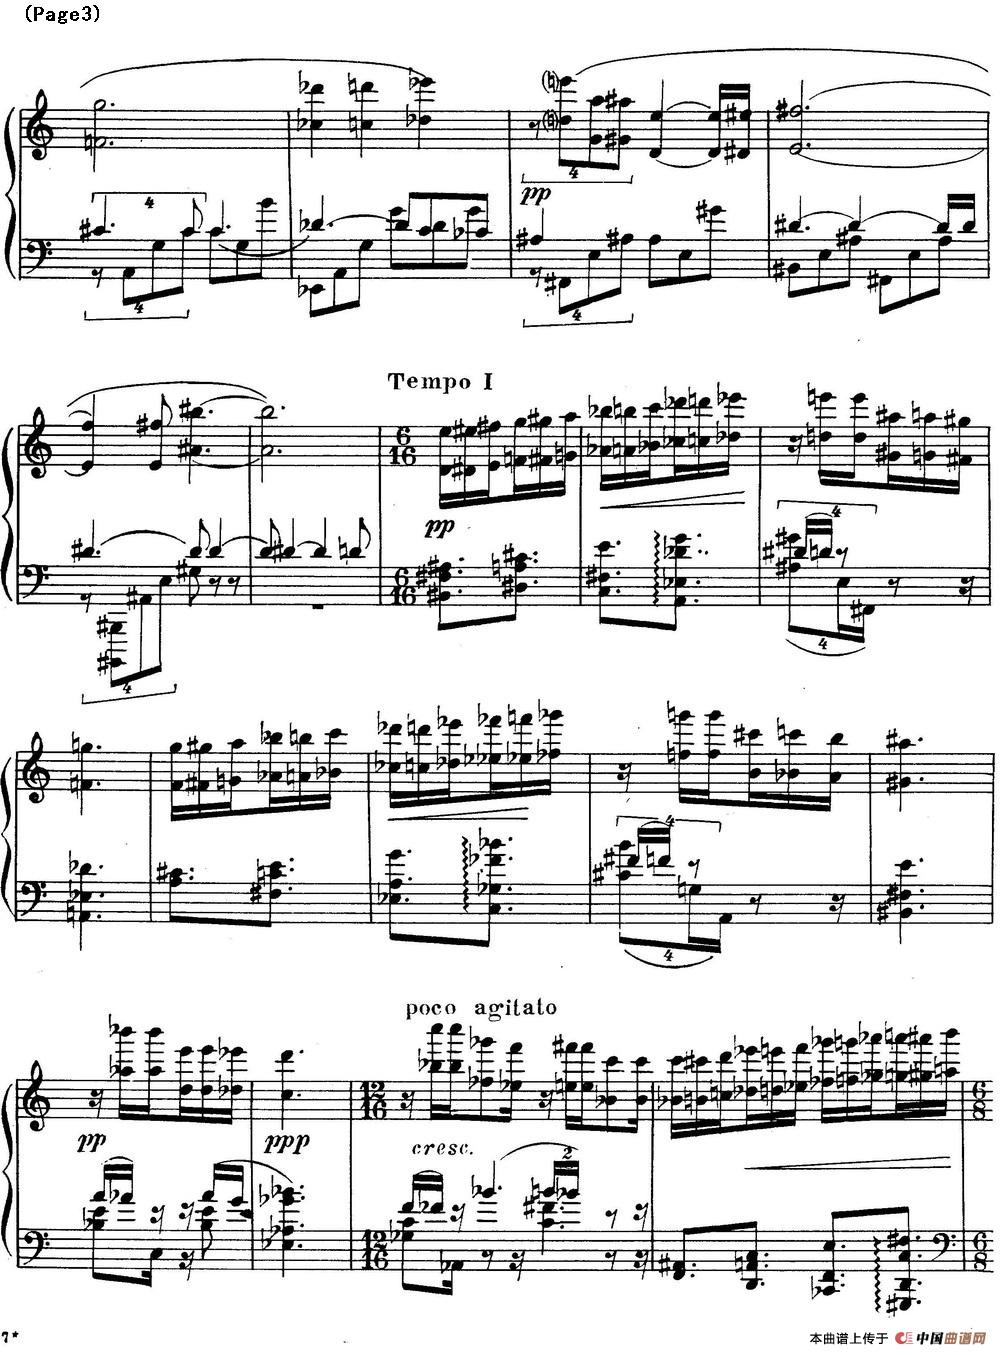 斯克里亚宾3首钢琴练习曲 Op65（No.1）(1)_Scriabin Etude Op.65 No.1_页面_3.jpg